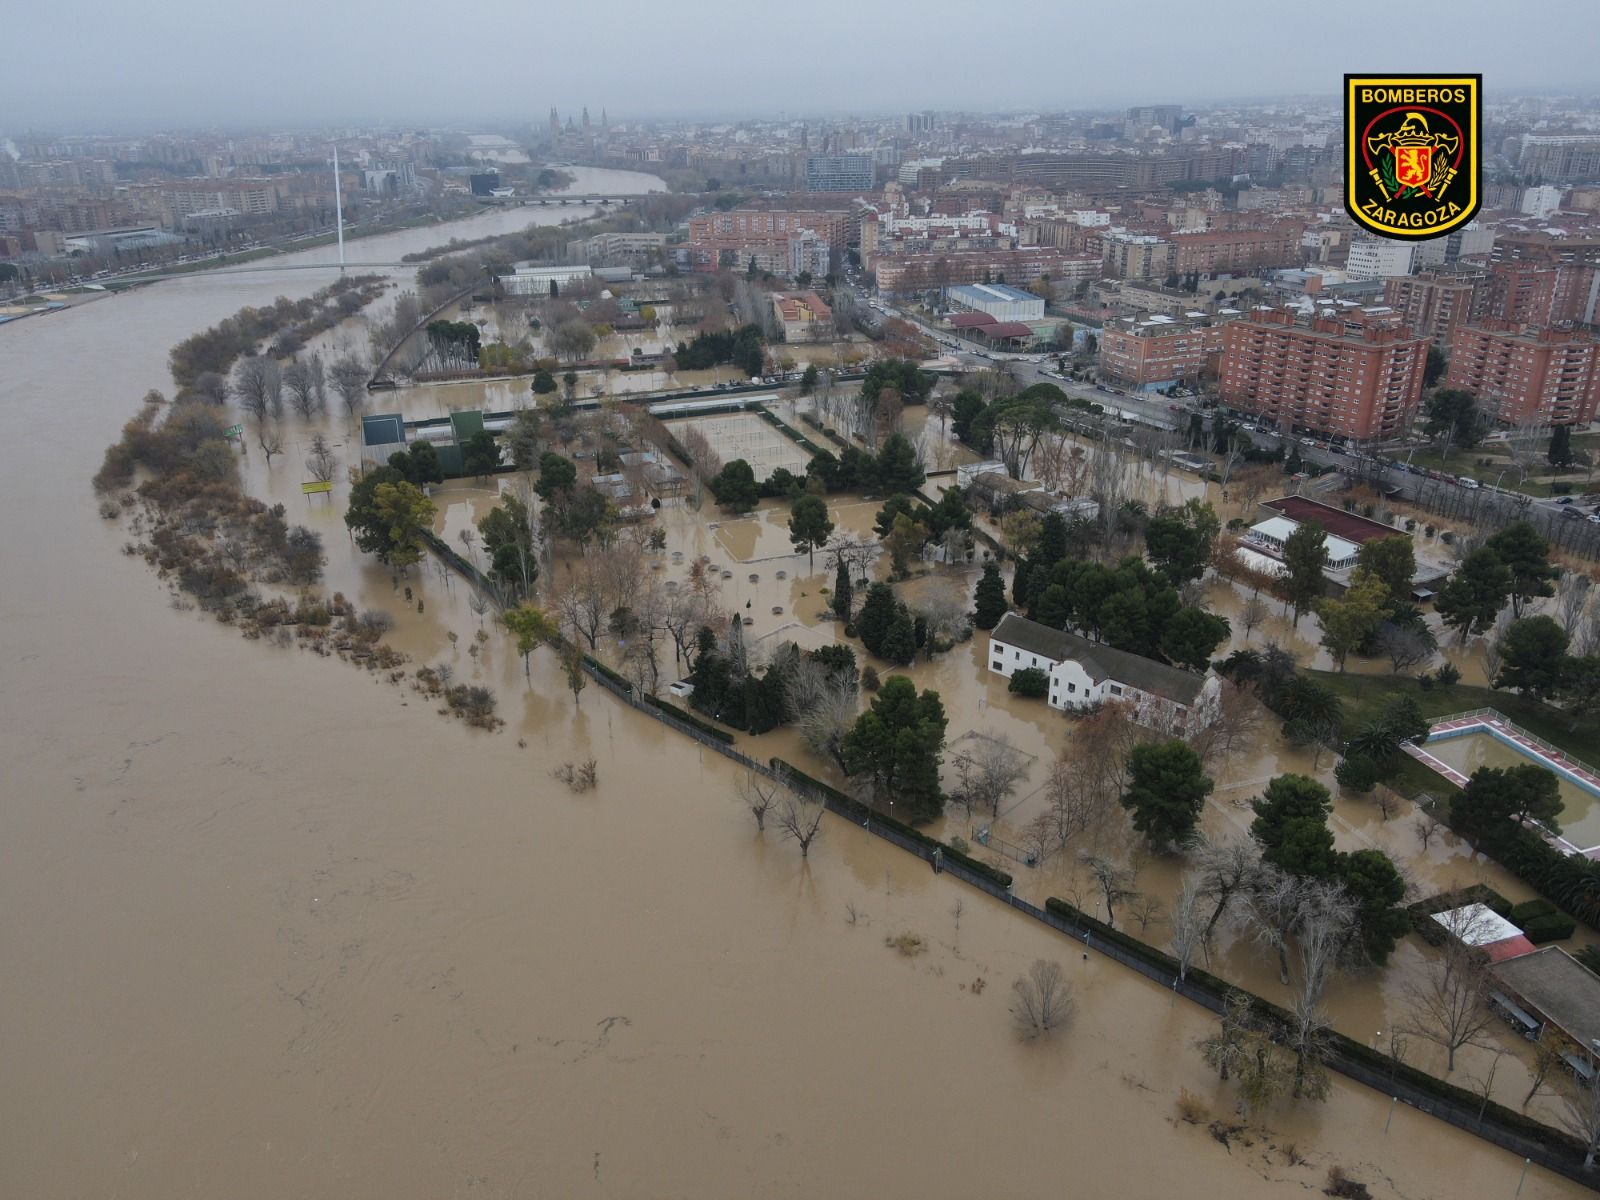 FOTOGALERÍA | Crecida extraordinaria del Ebro en Zaragoza vista desde un dron